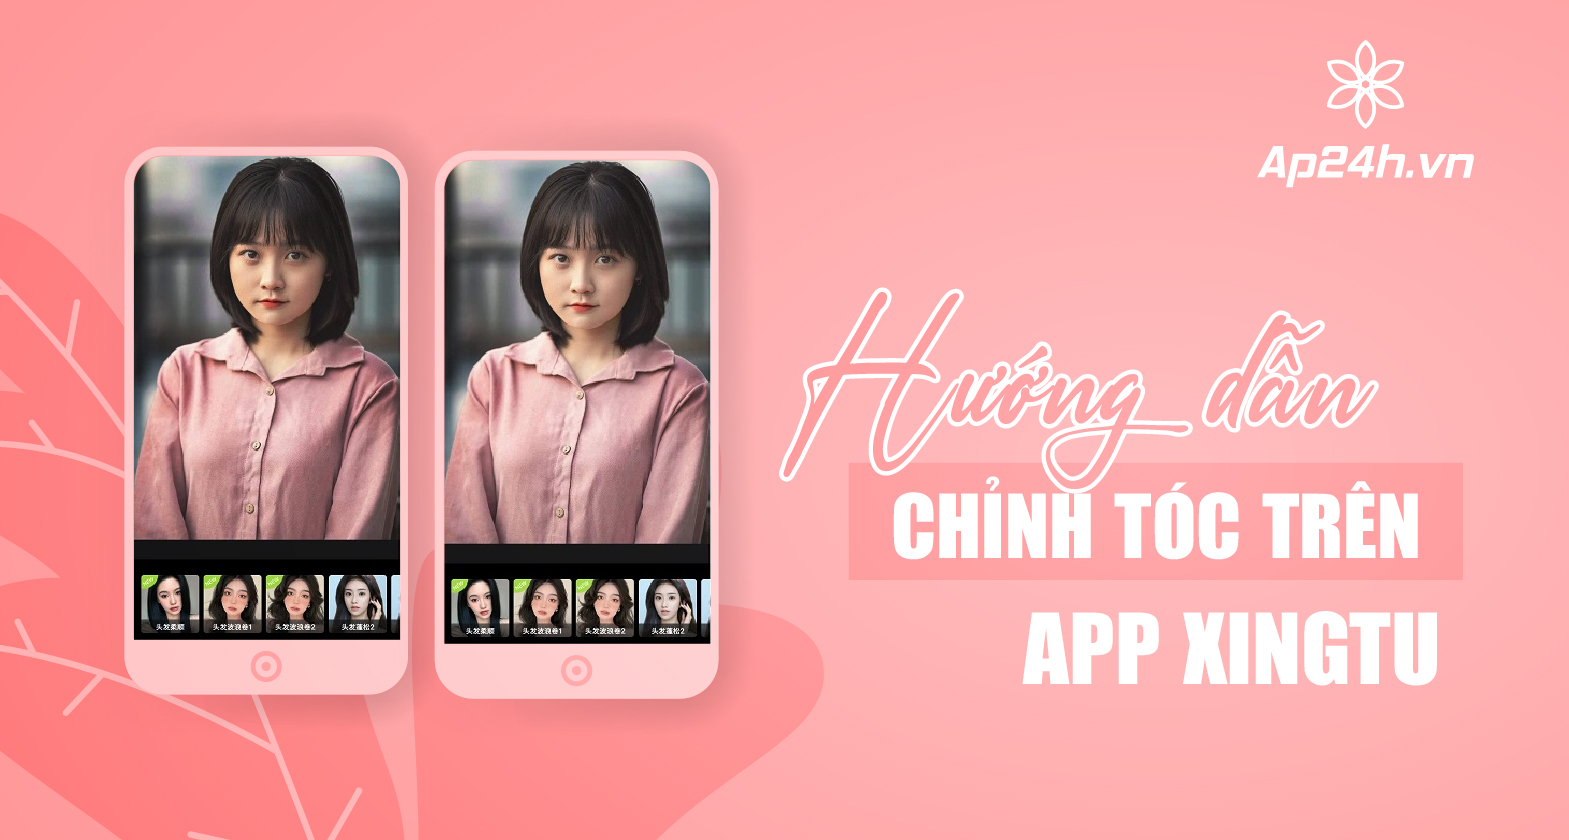 Hướng dẫn cách chỉnh tóc trên App Xingtu